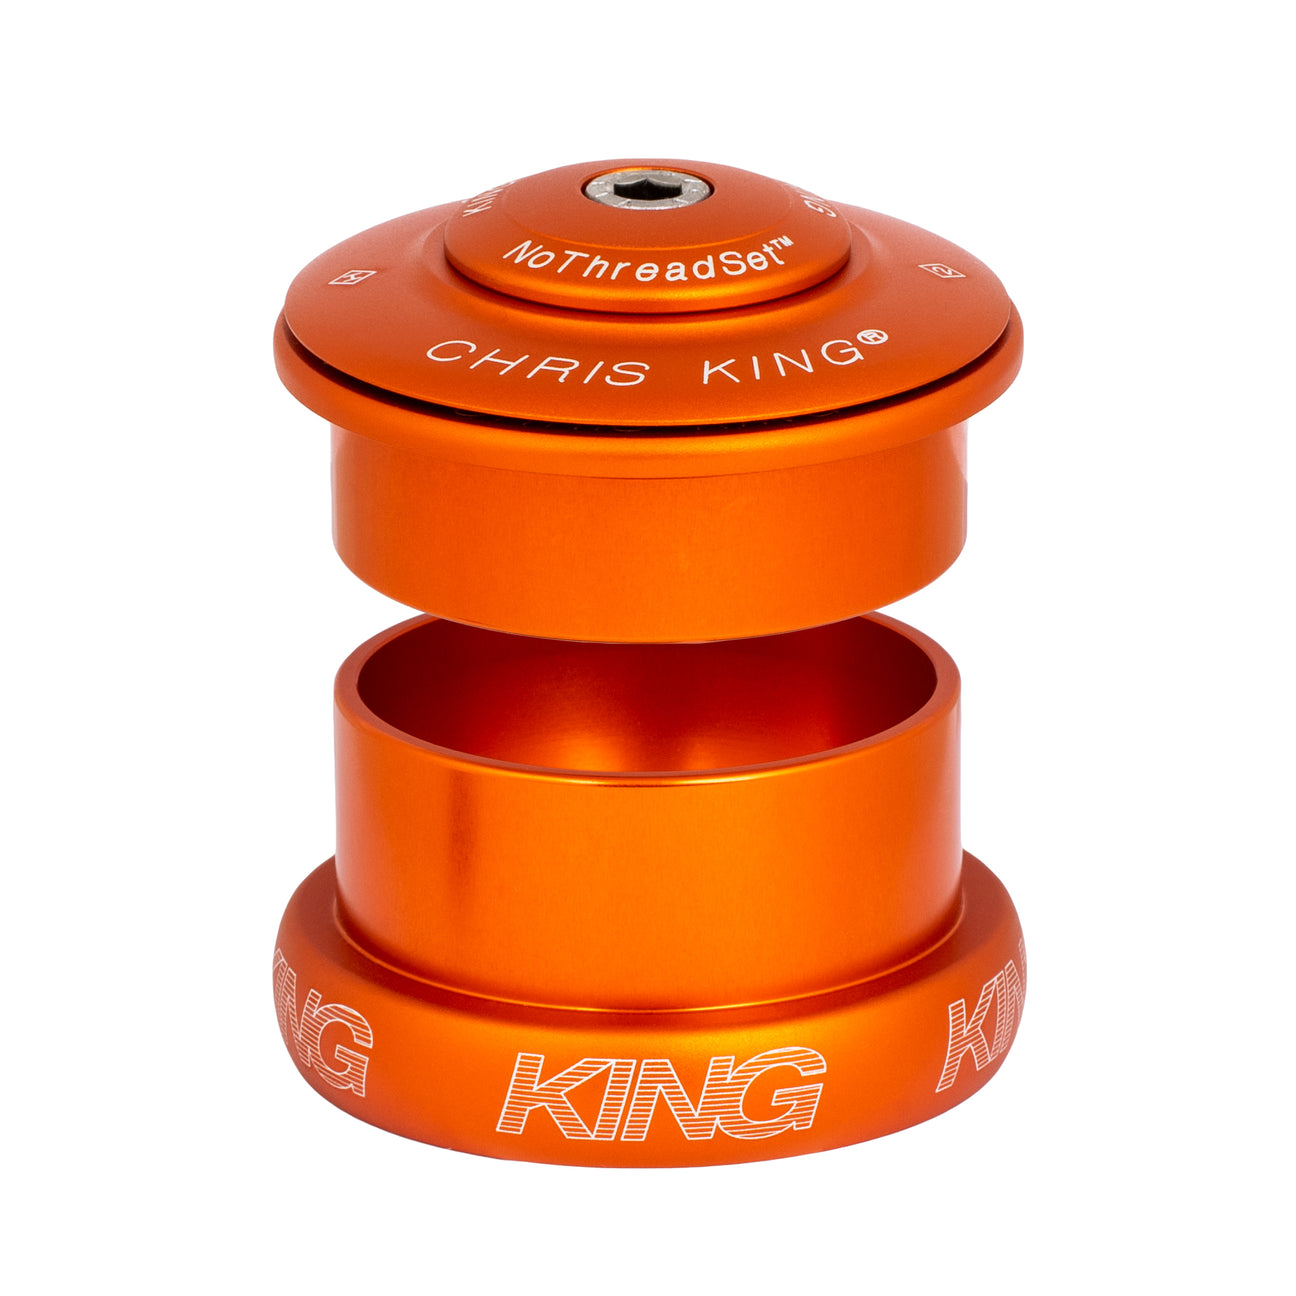 Chris King Inset 5 headset in matte mango